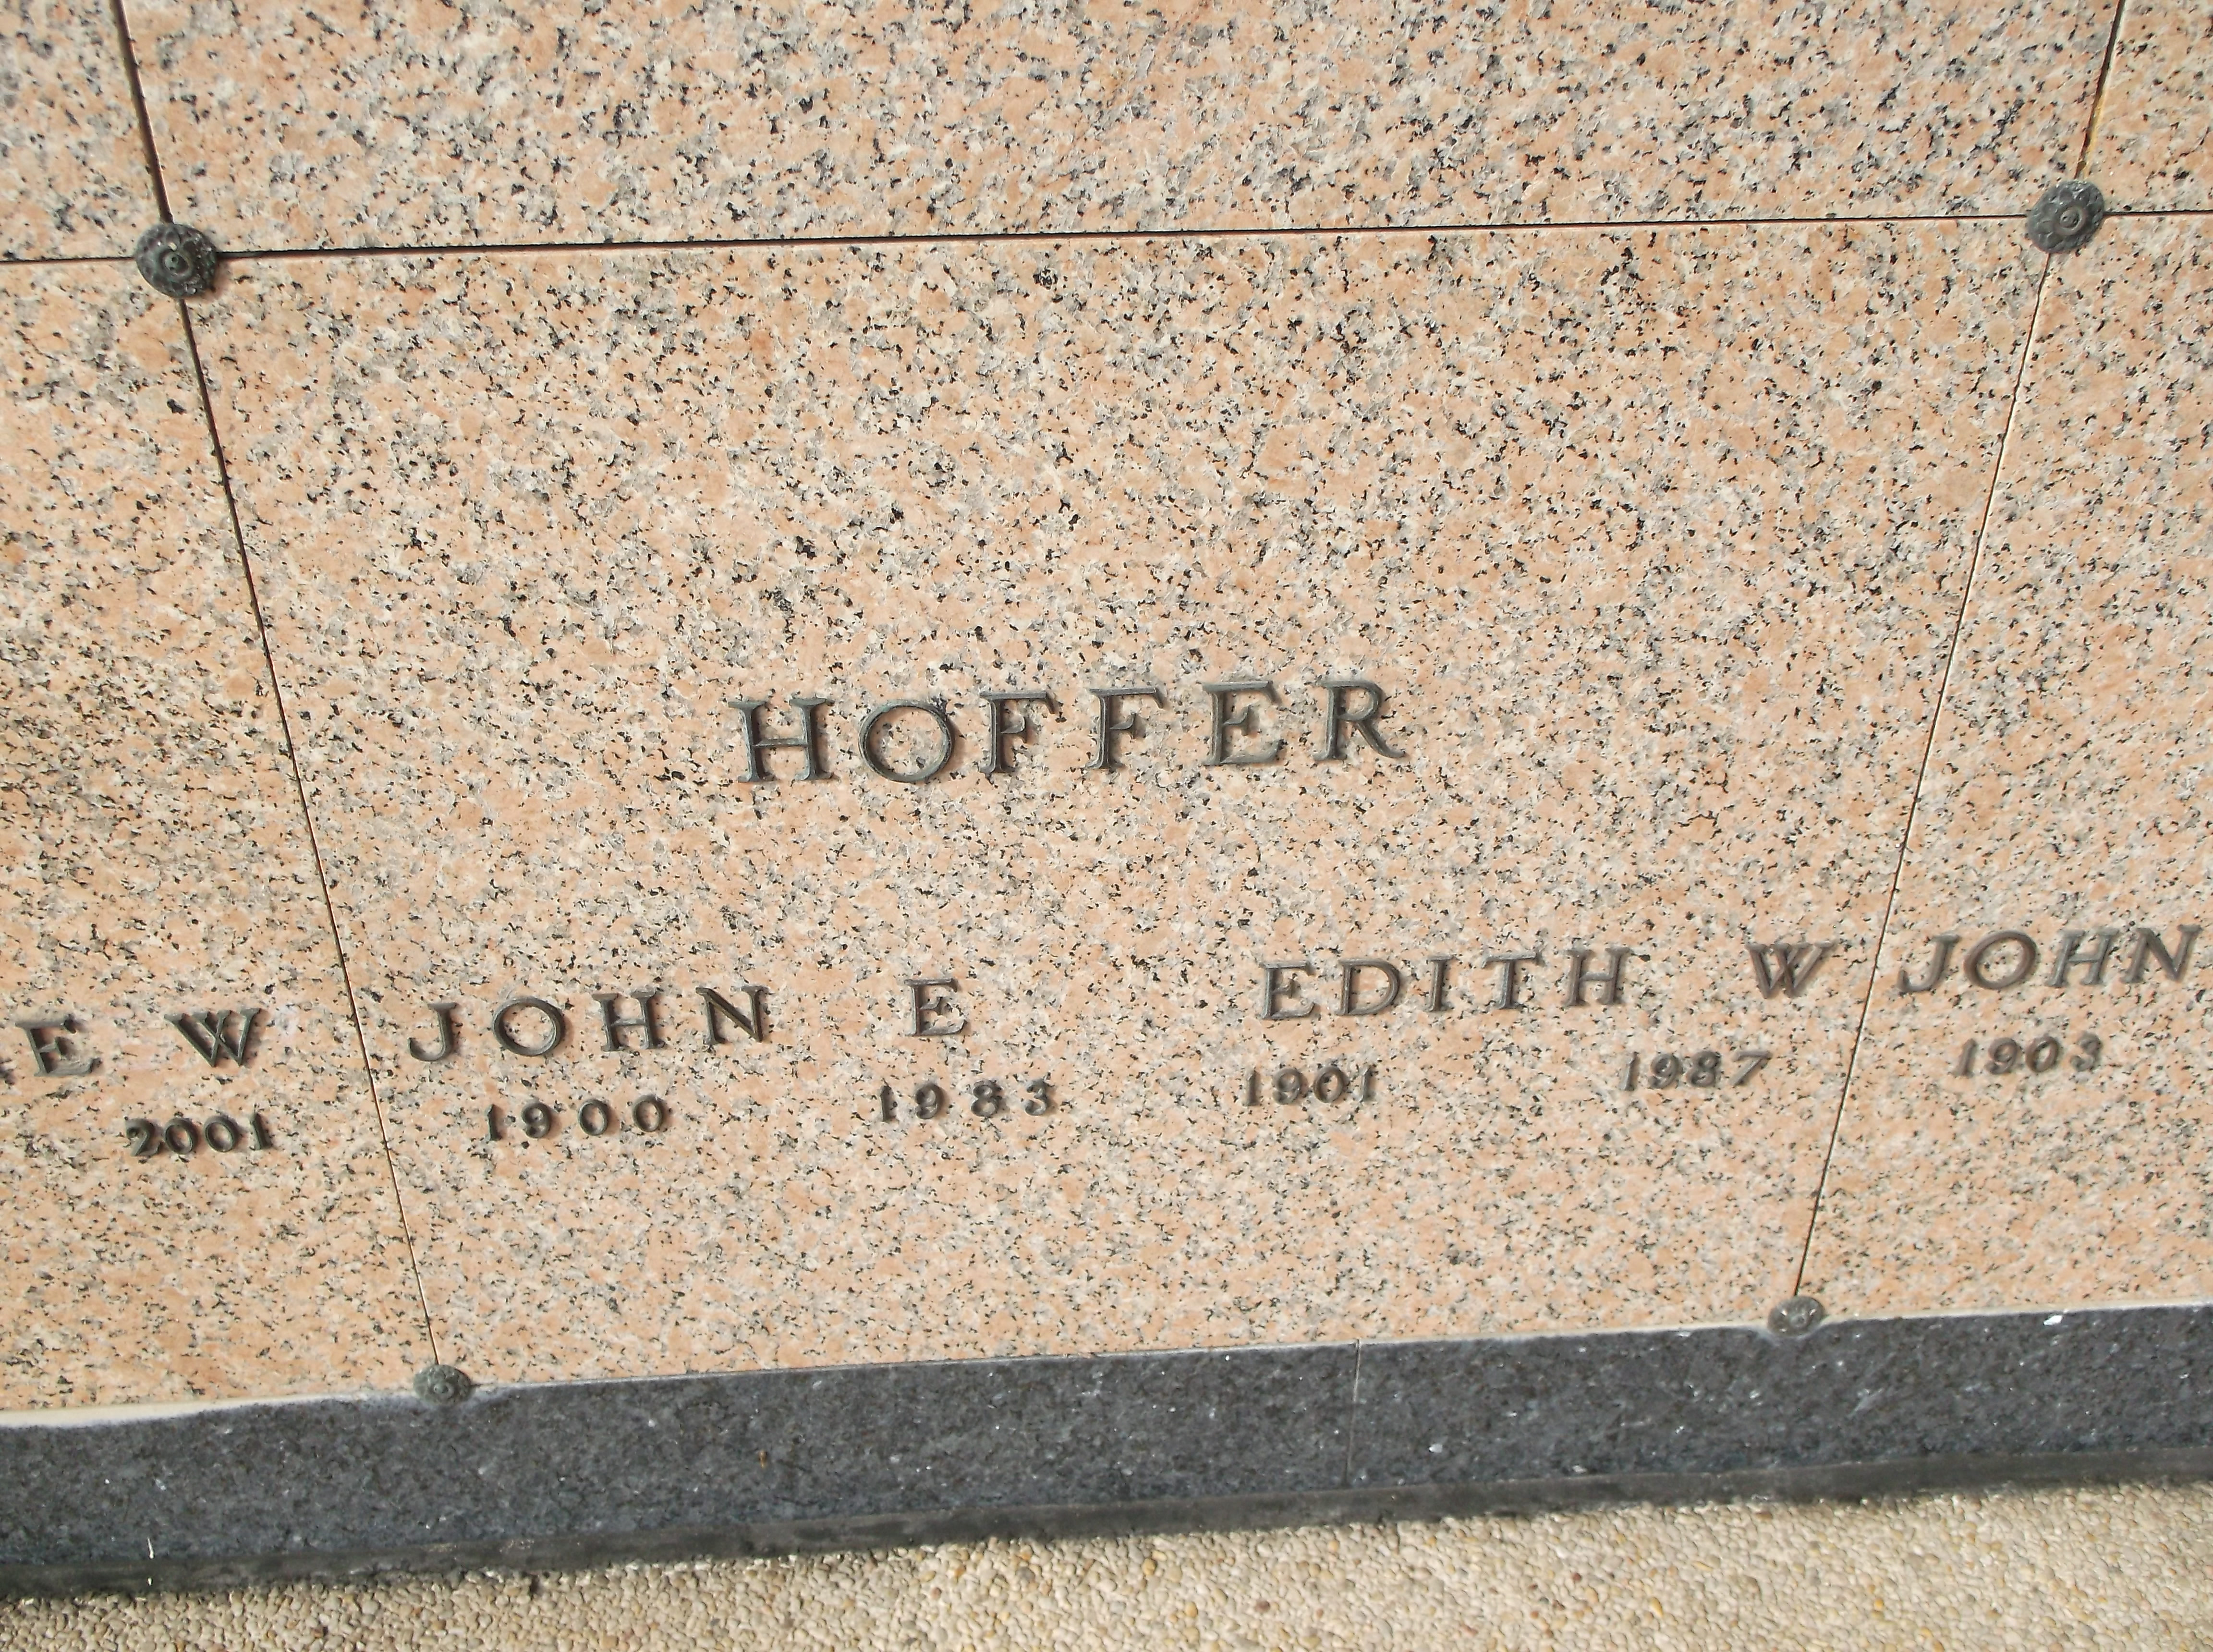 John E Hoffer